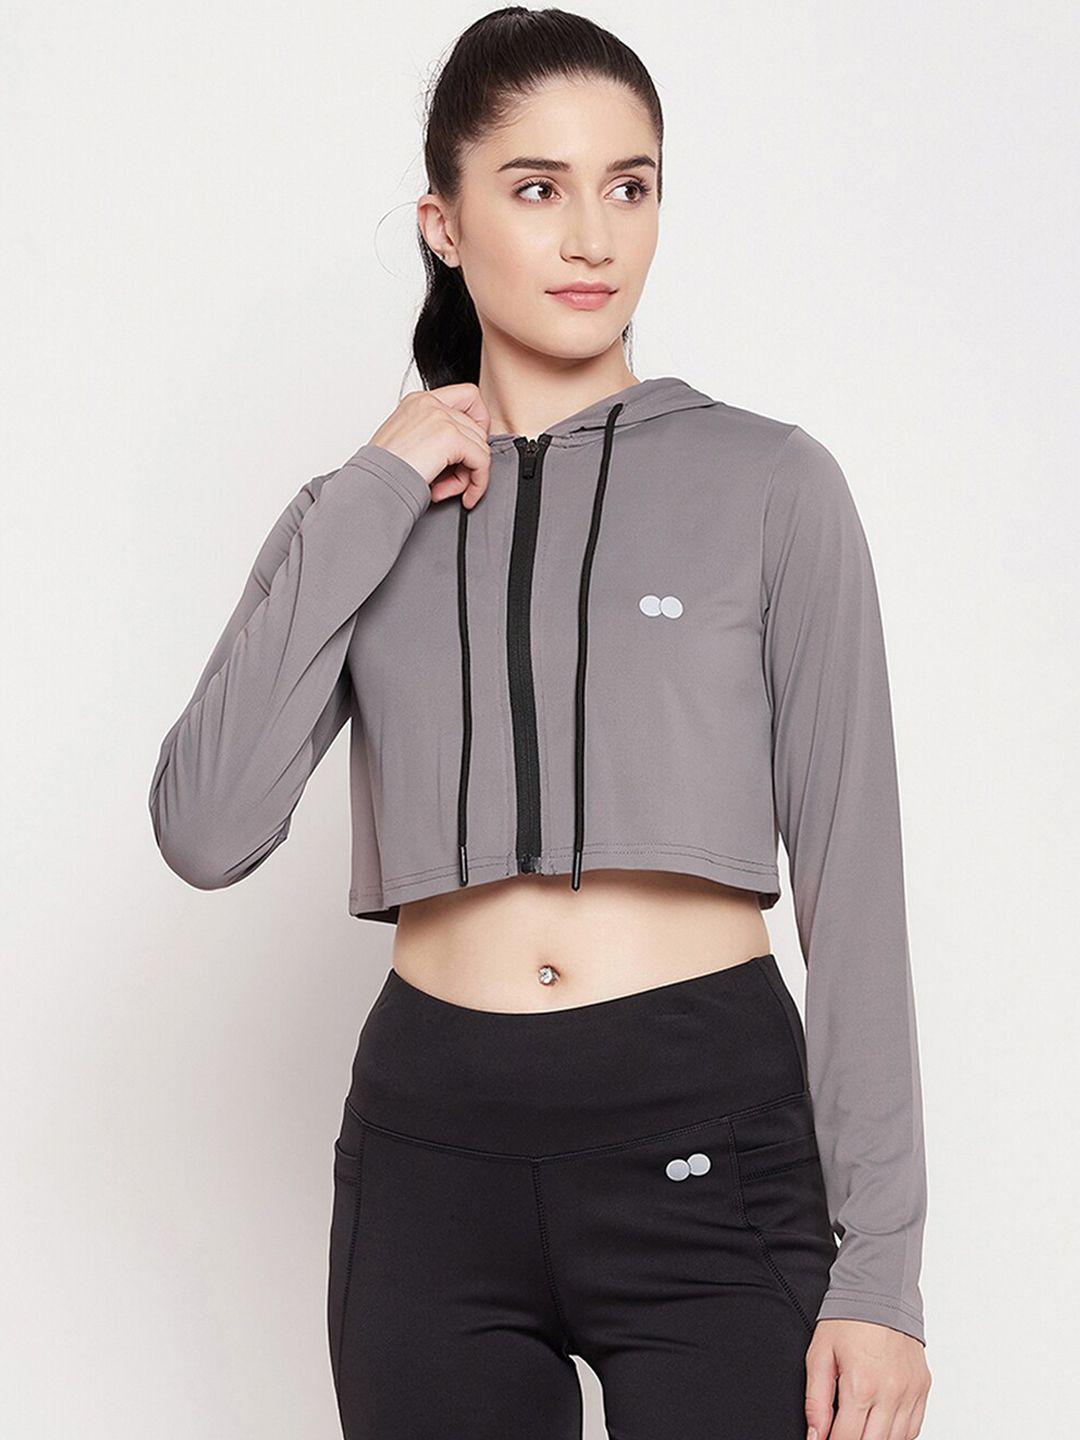 clovia women grey crop training or gym sporty jacket